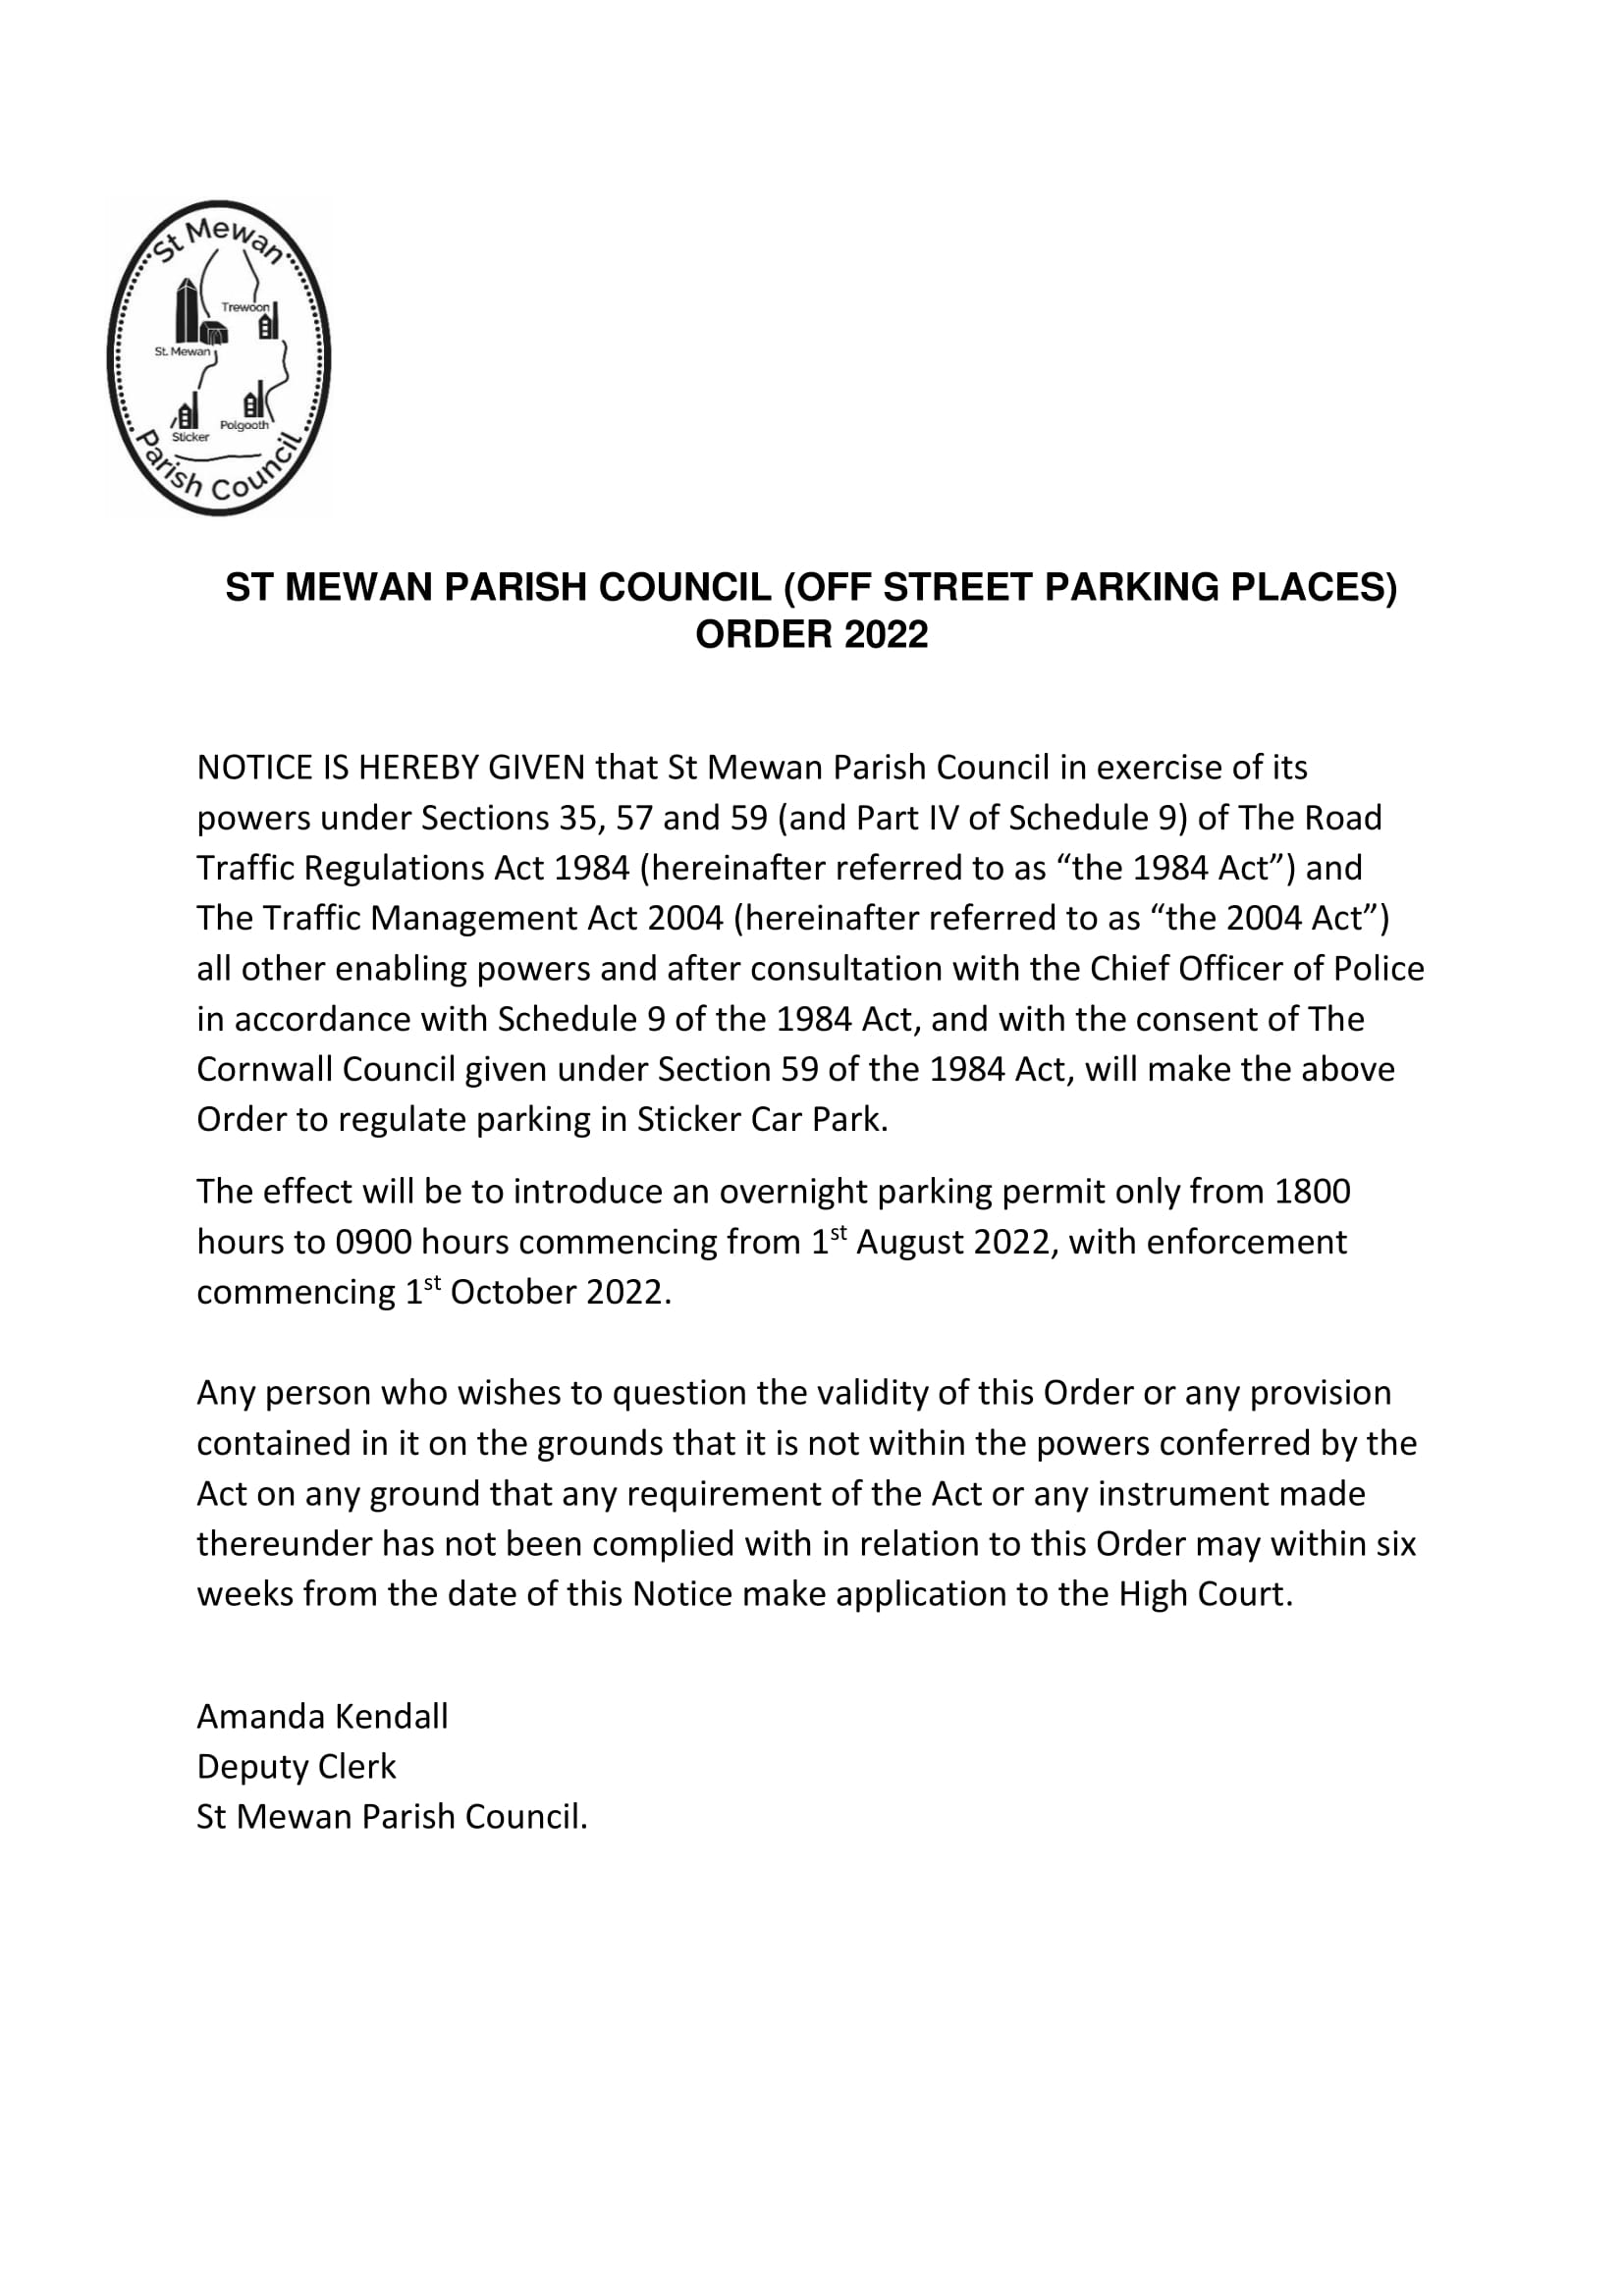 St Mewan Parish Council Parking Order